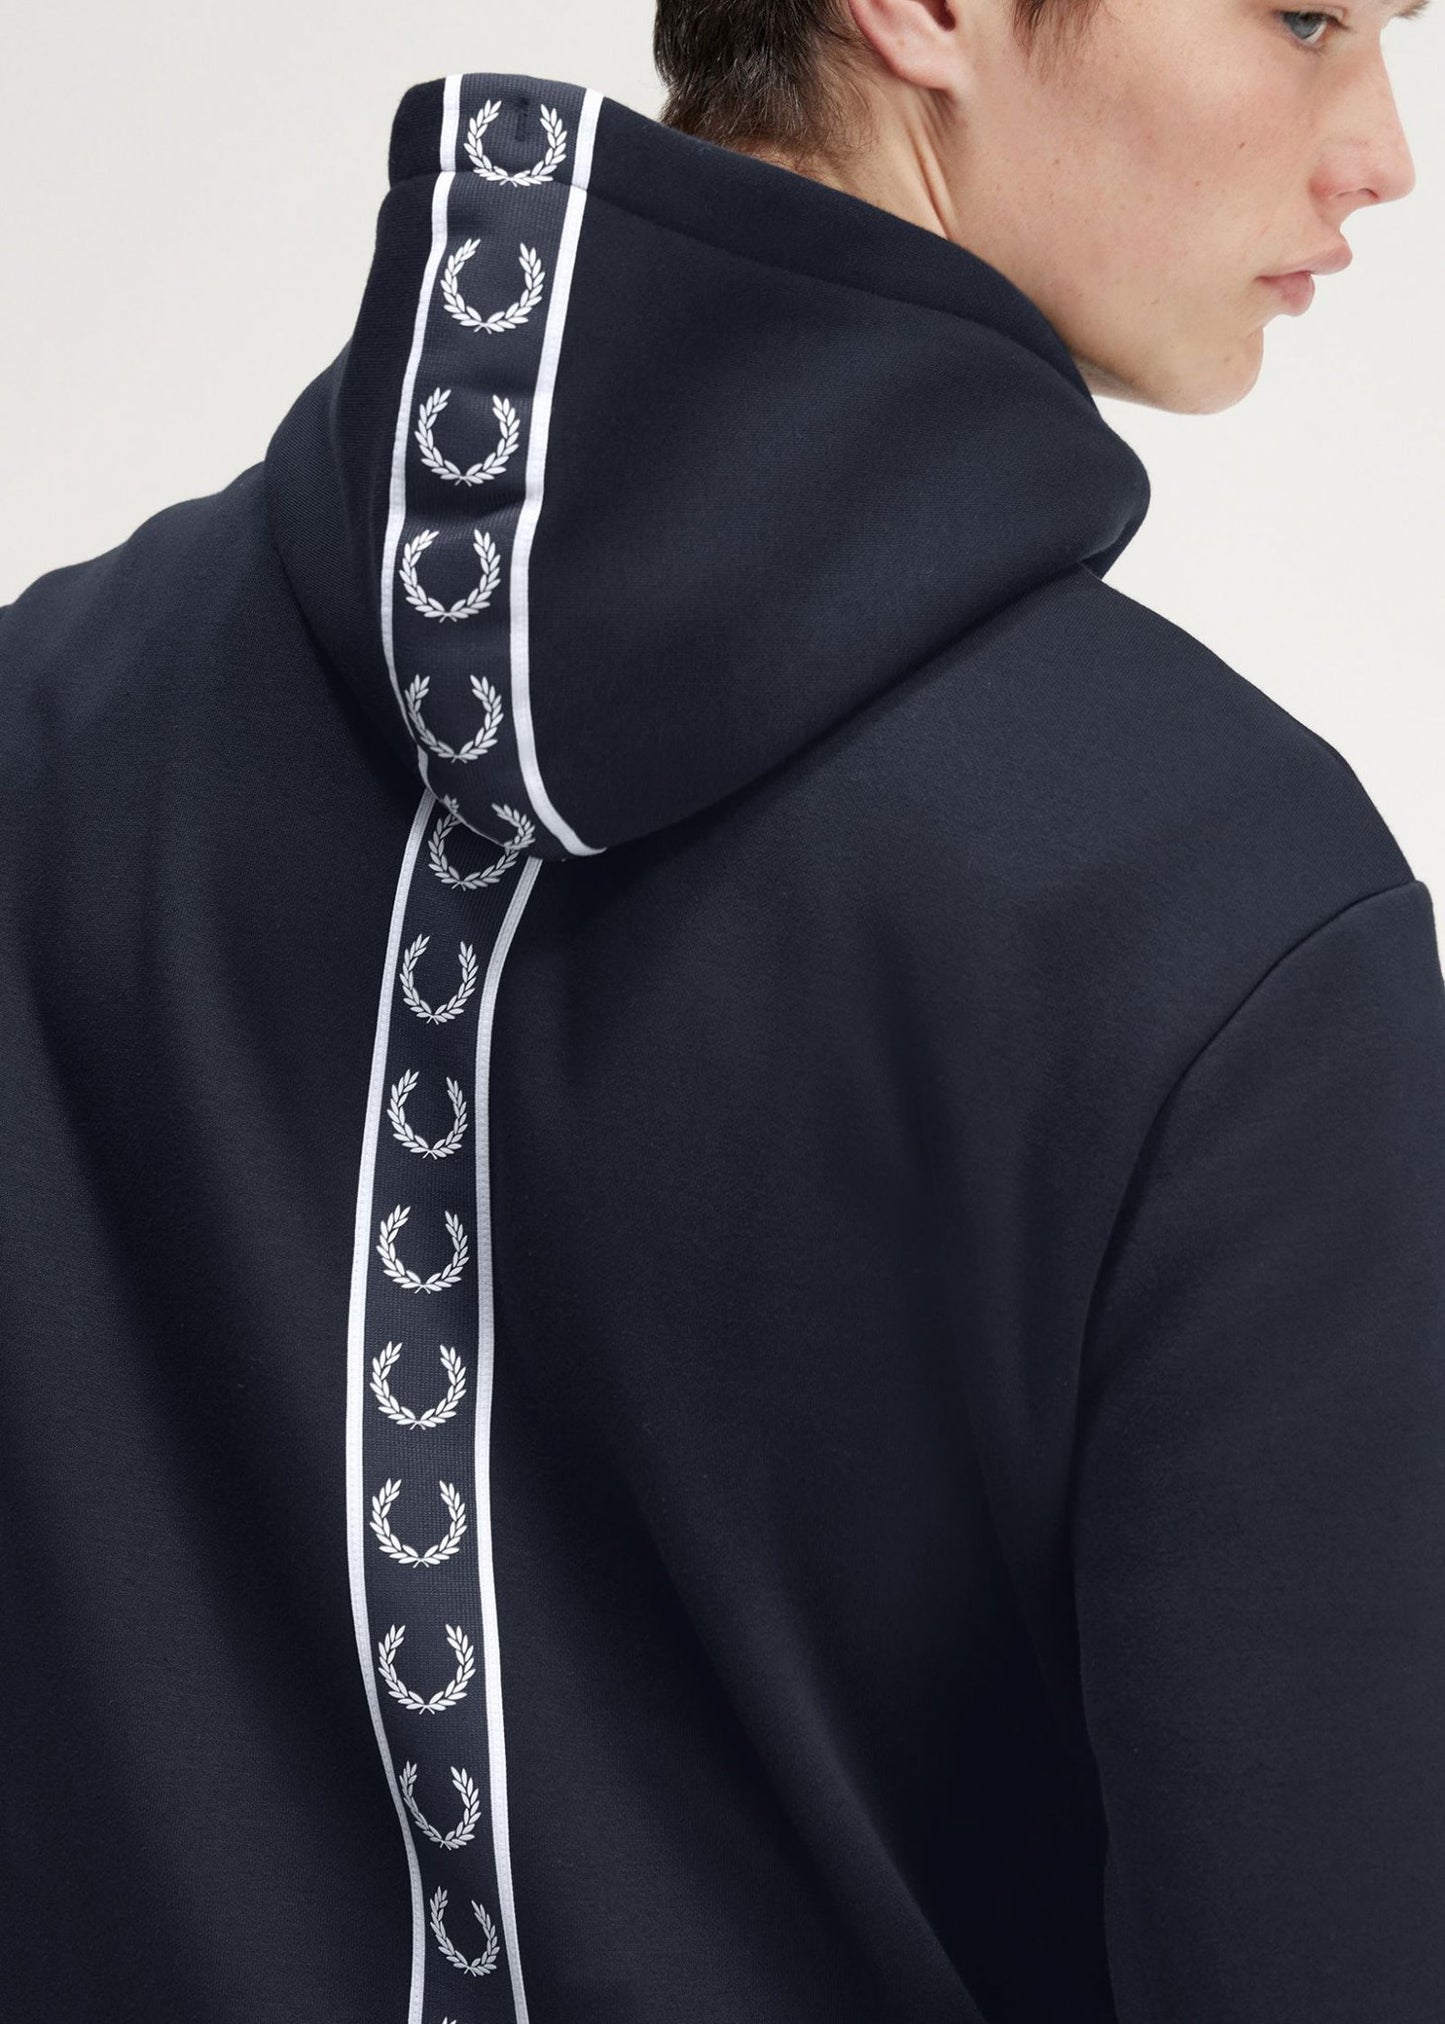 Tape detail hooded sweatshirt - navy